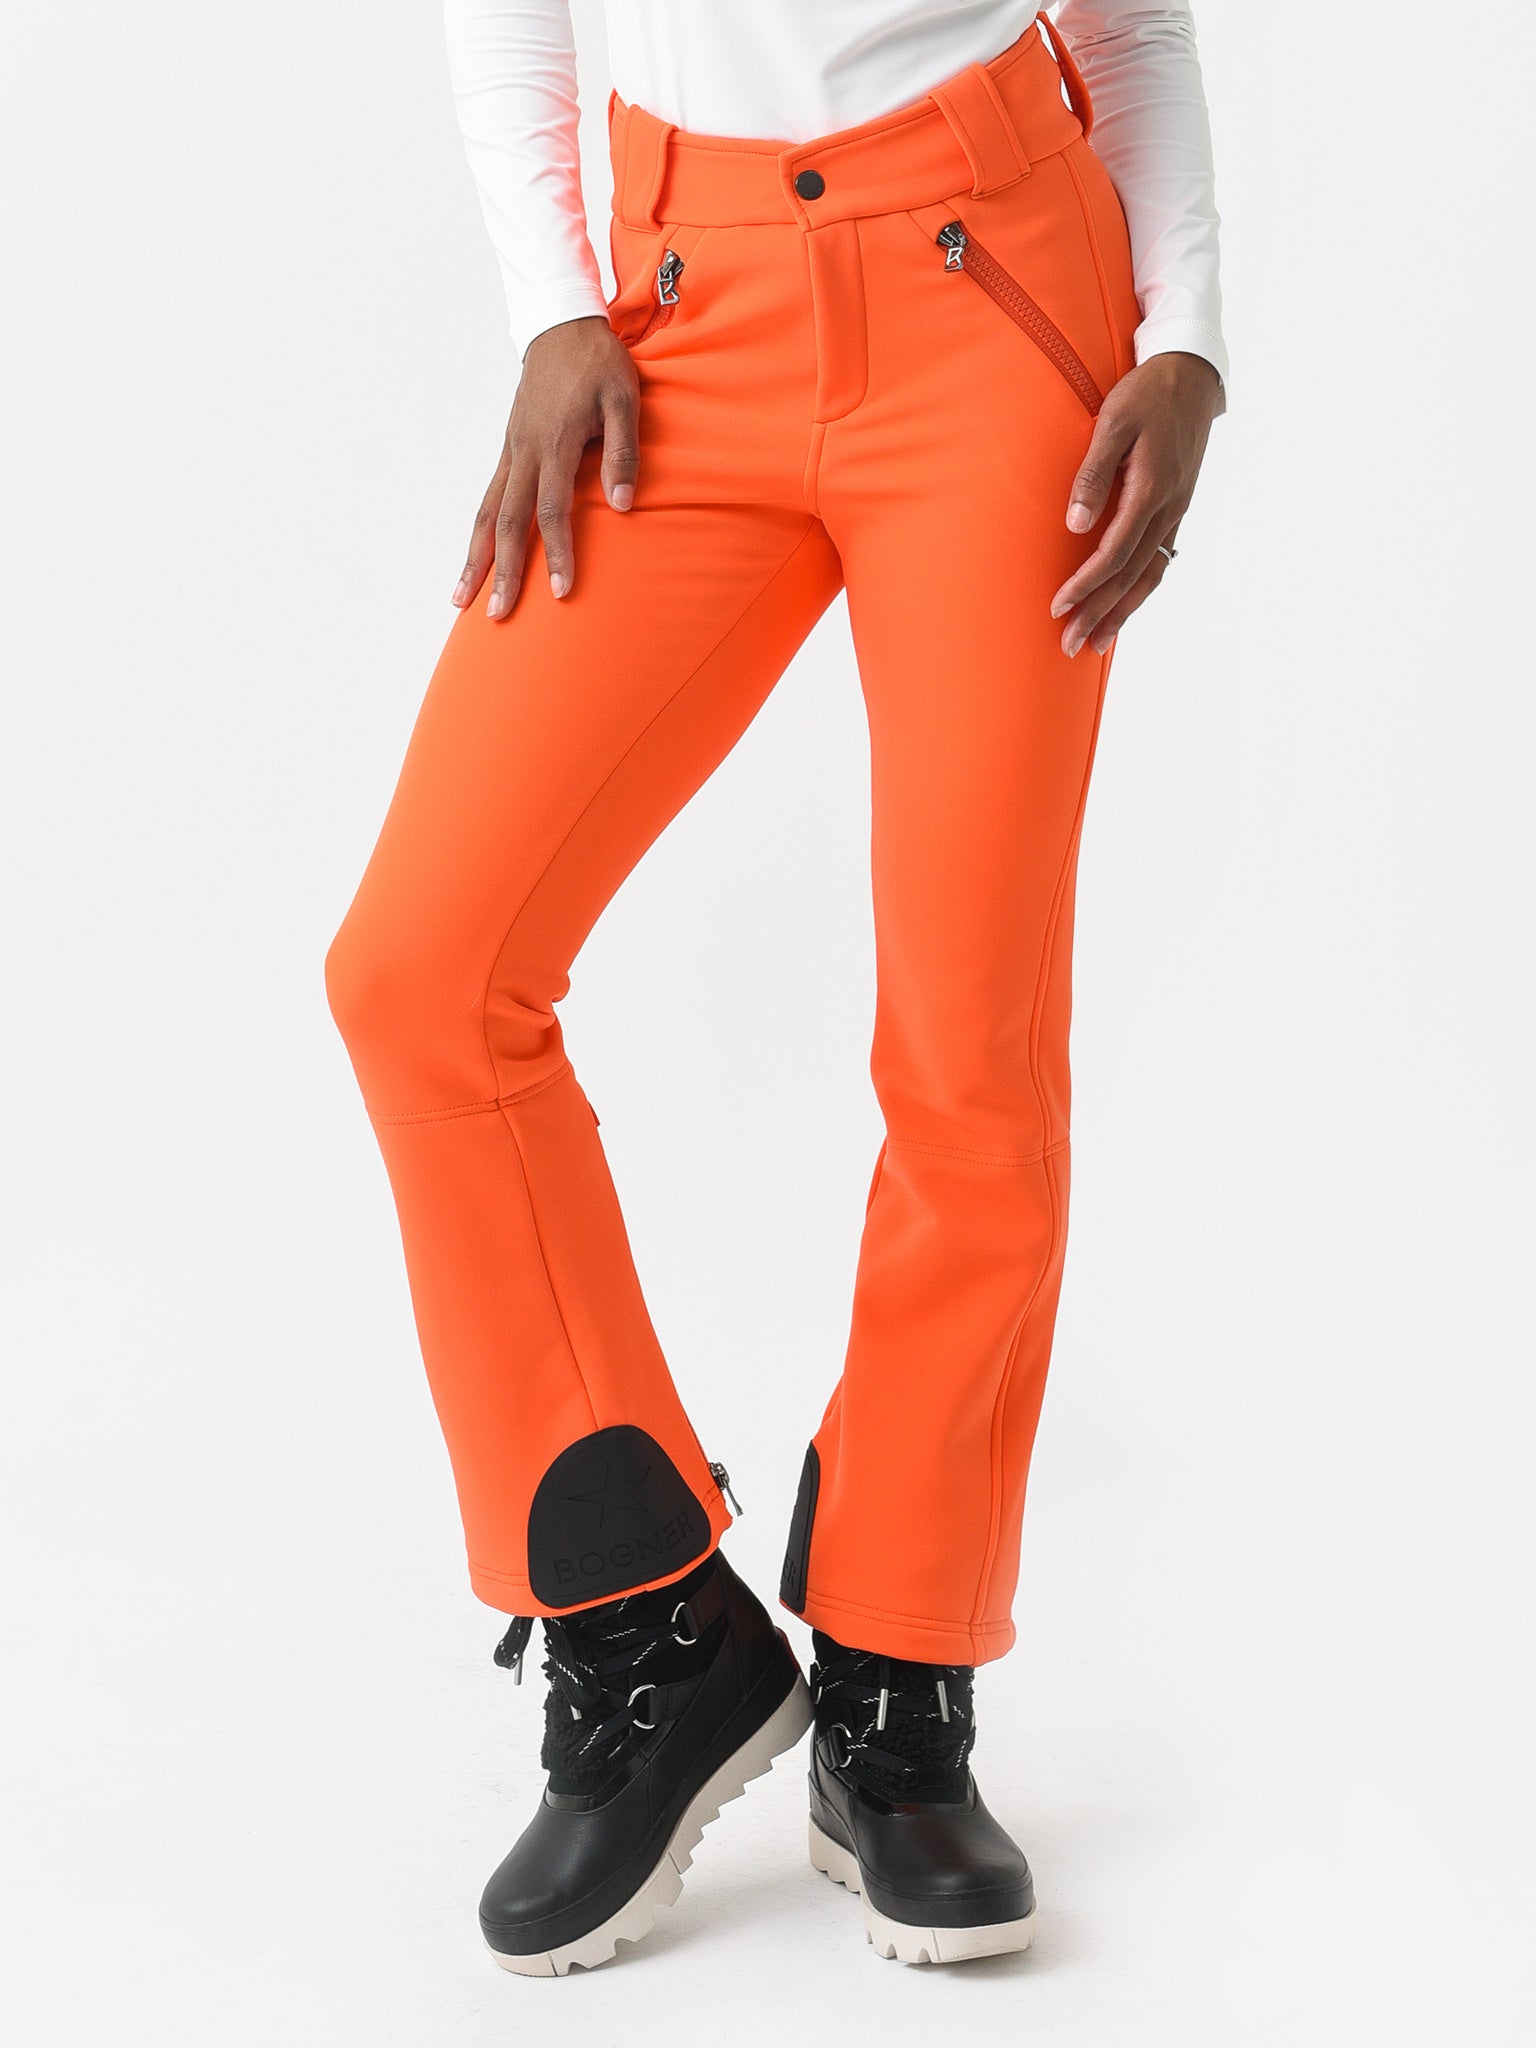 Orange Sports Snow Pants  Bibs for Women for sale  eBay